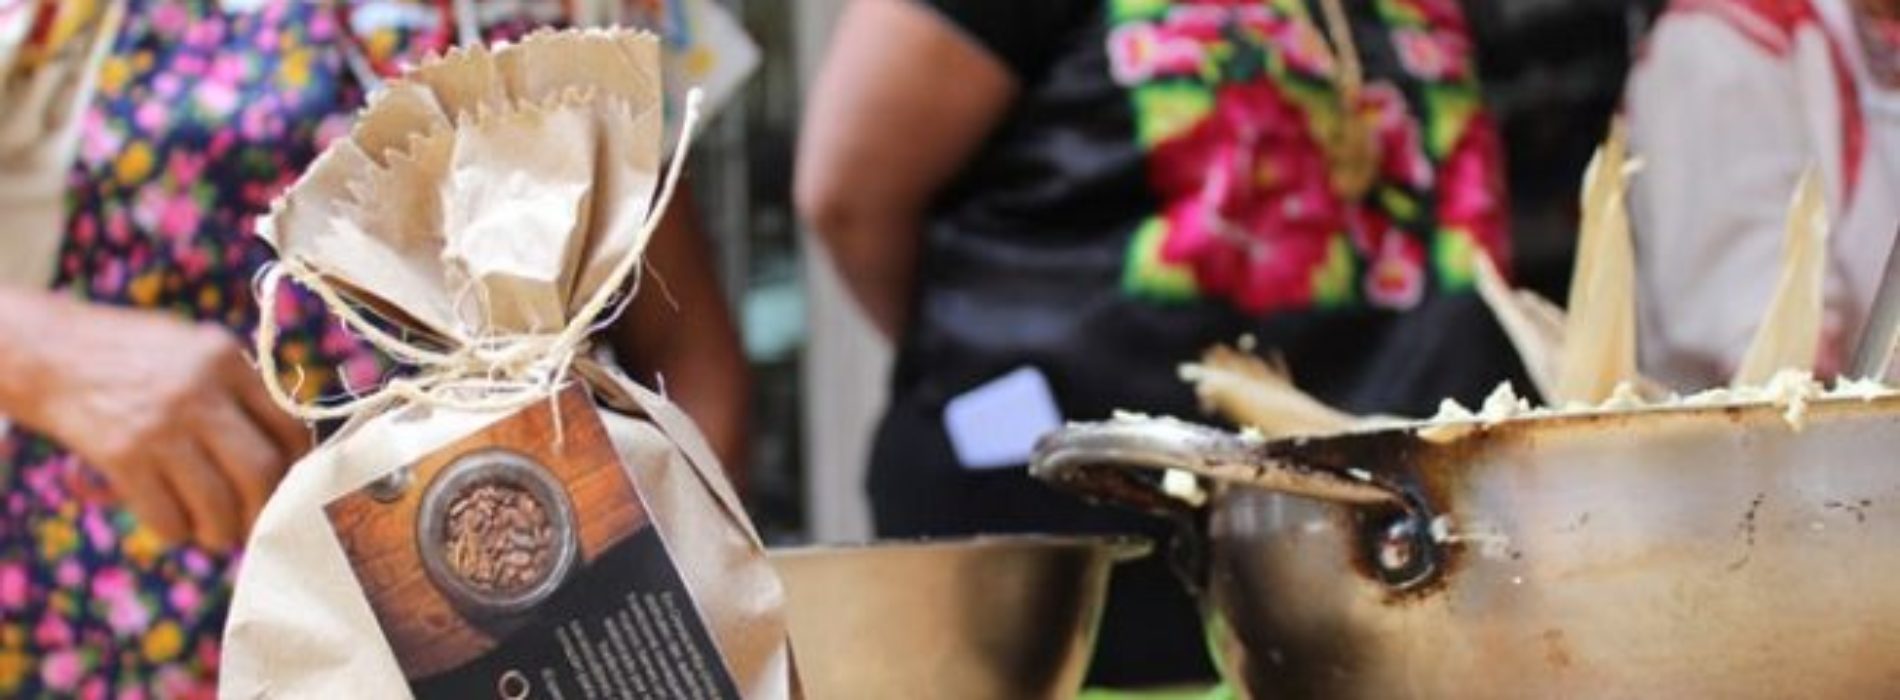 ¡Rifados! Usan chocolate para mejorar vida en mixteca
oaxaqueña